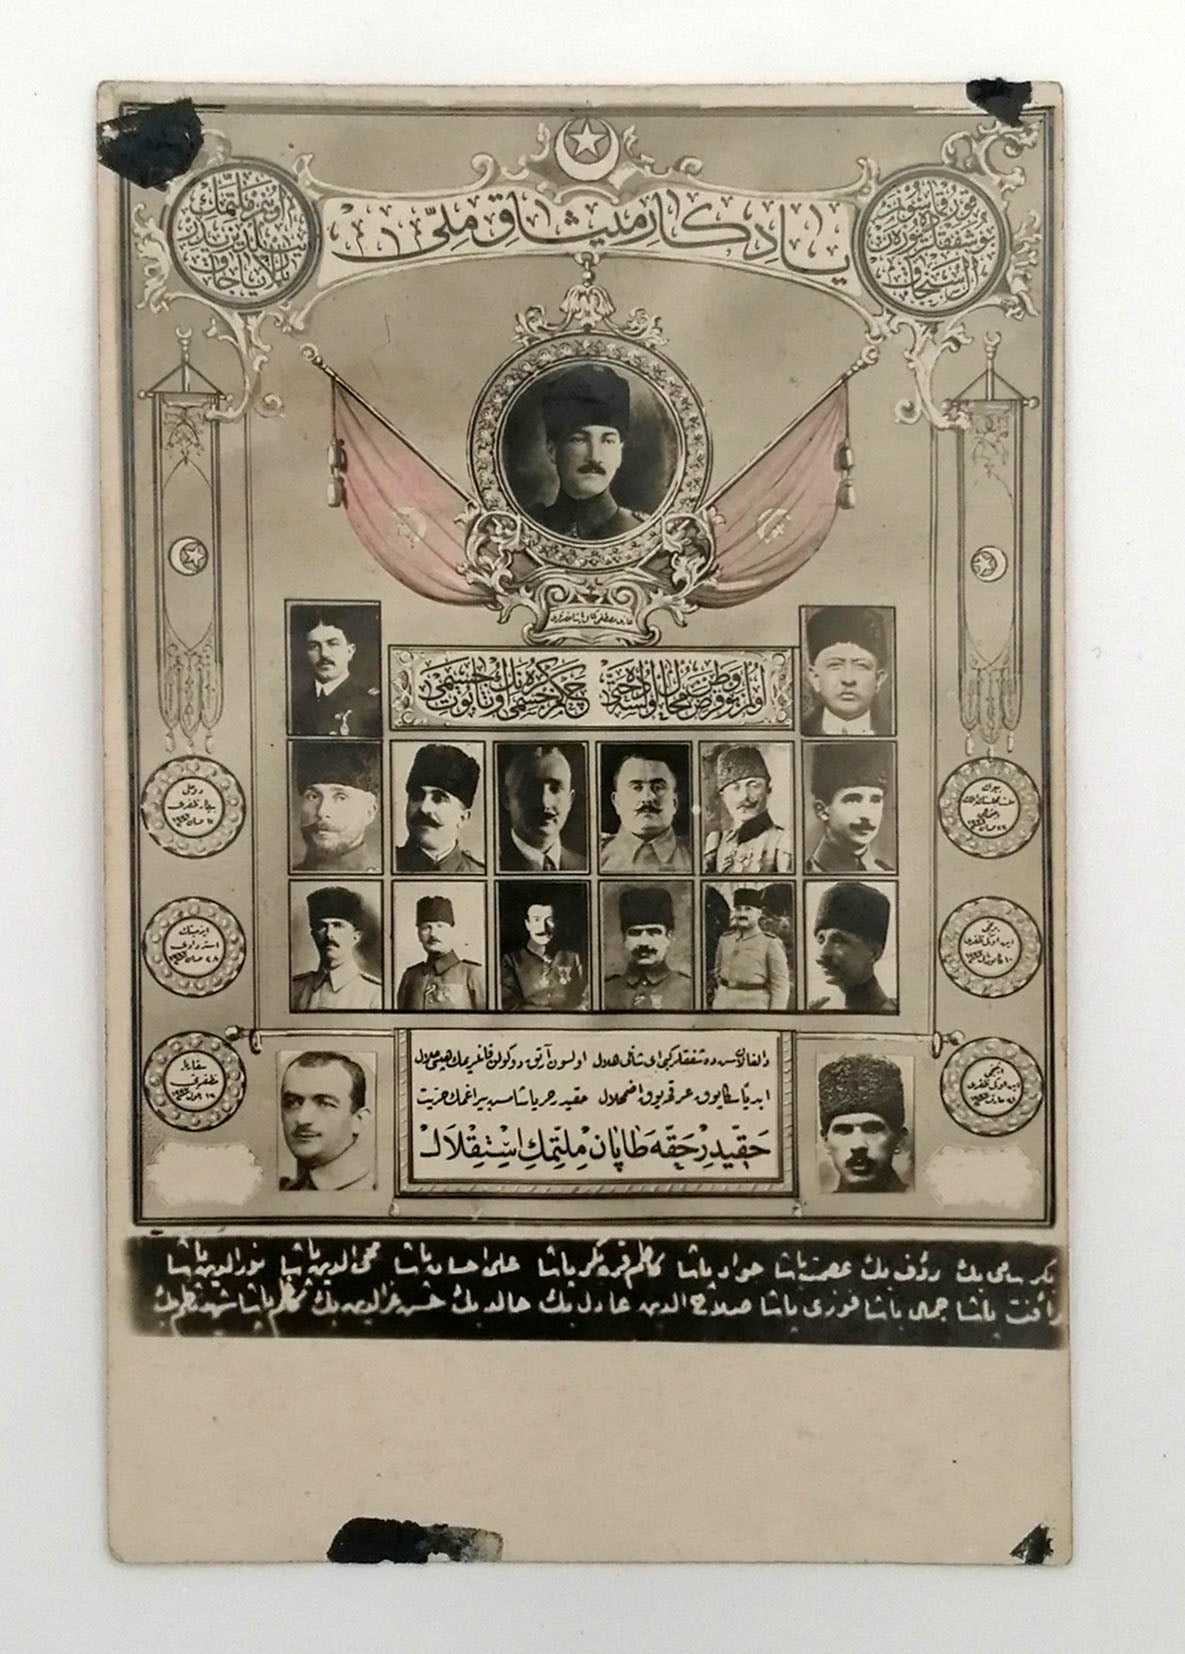 [PROPAGANDA / MİSÂK-I MİLLÎ] Yadigâr-ı Misak-ı Millî: Mustafa Kemal Atatürk ve devlet erkânı paşalar. Misâk-ı Millî kartpostalı